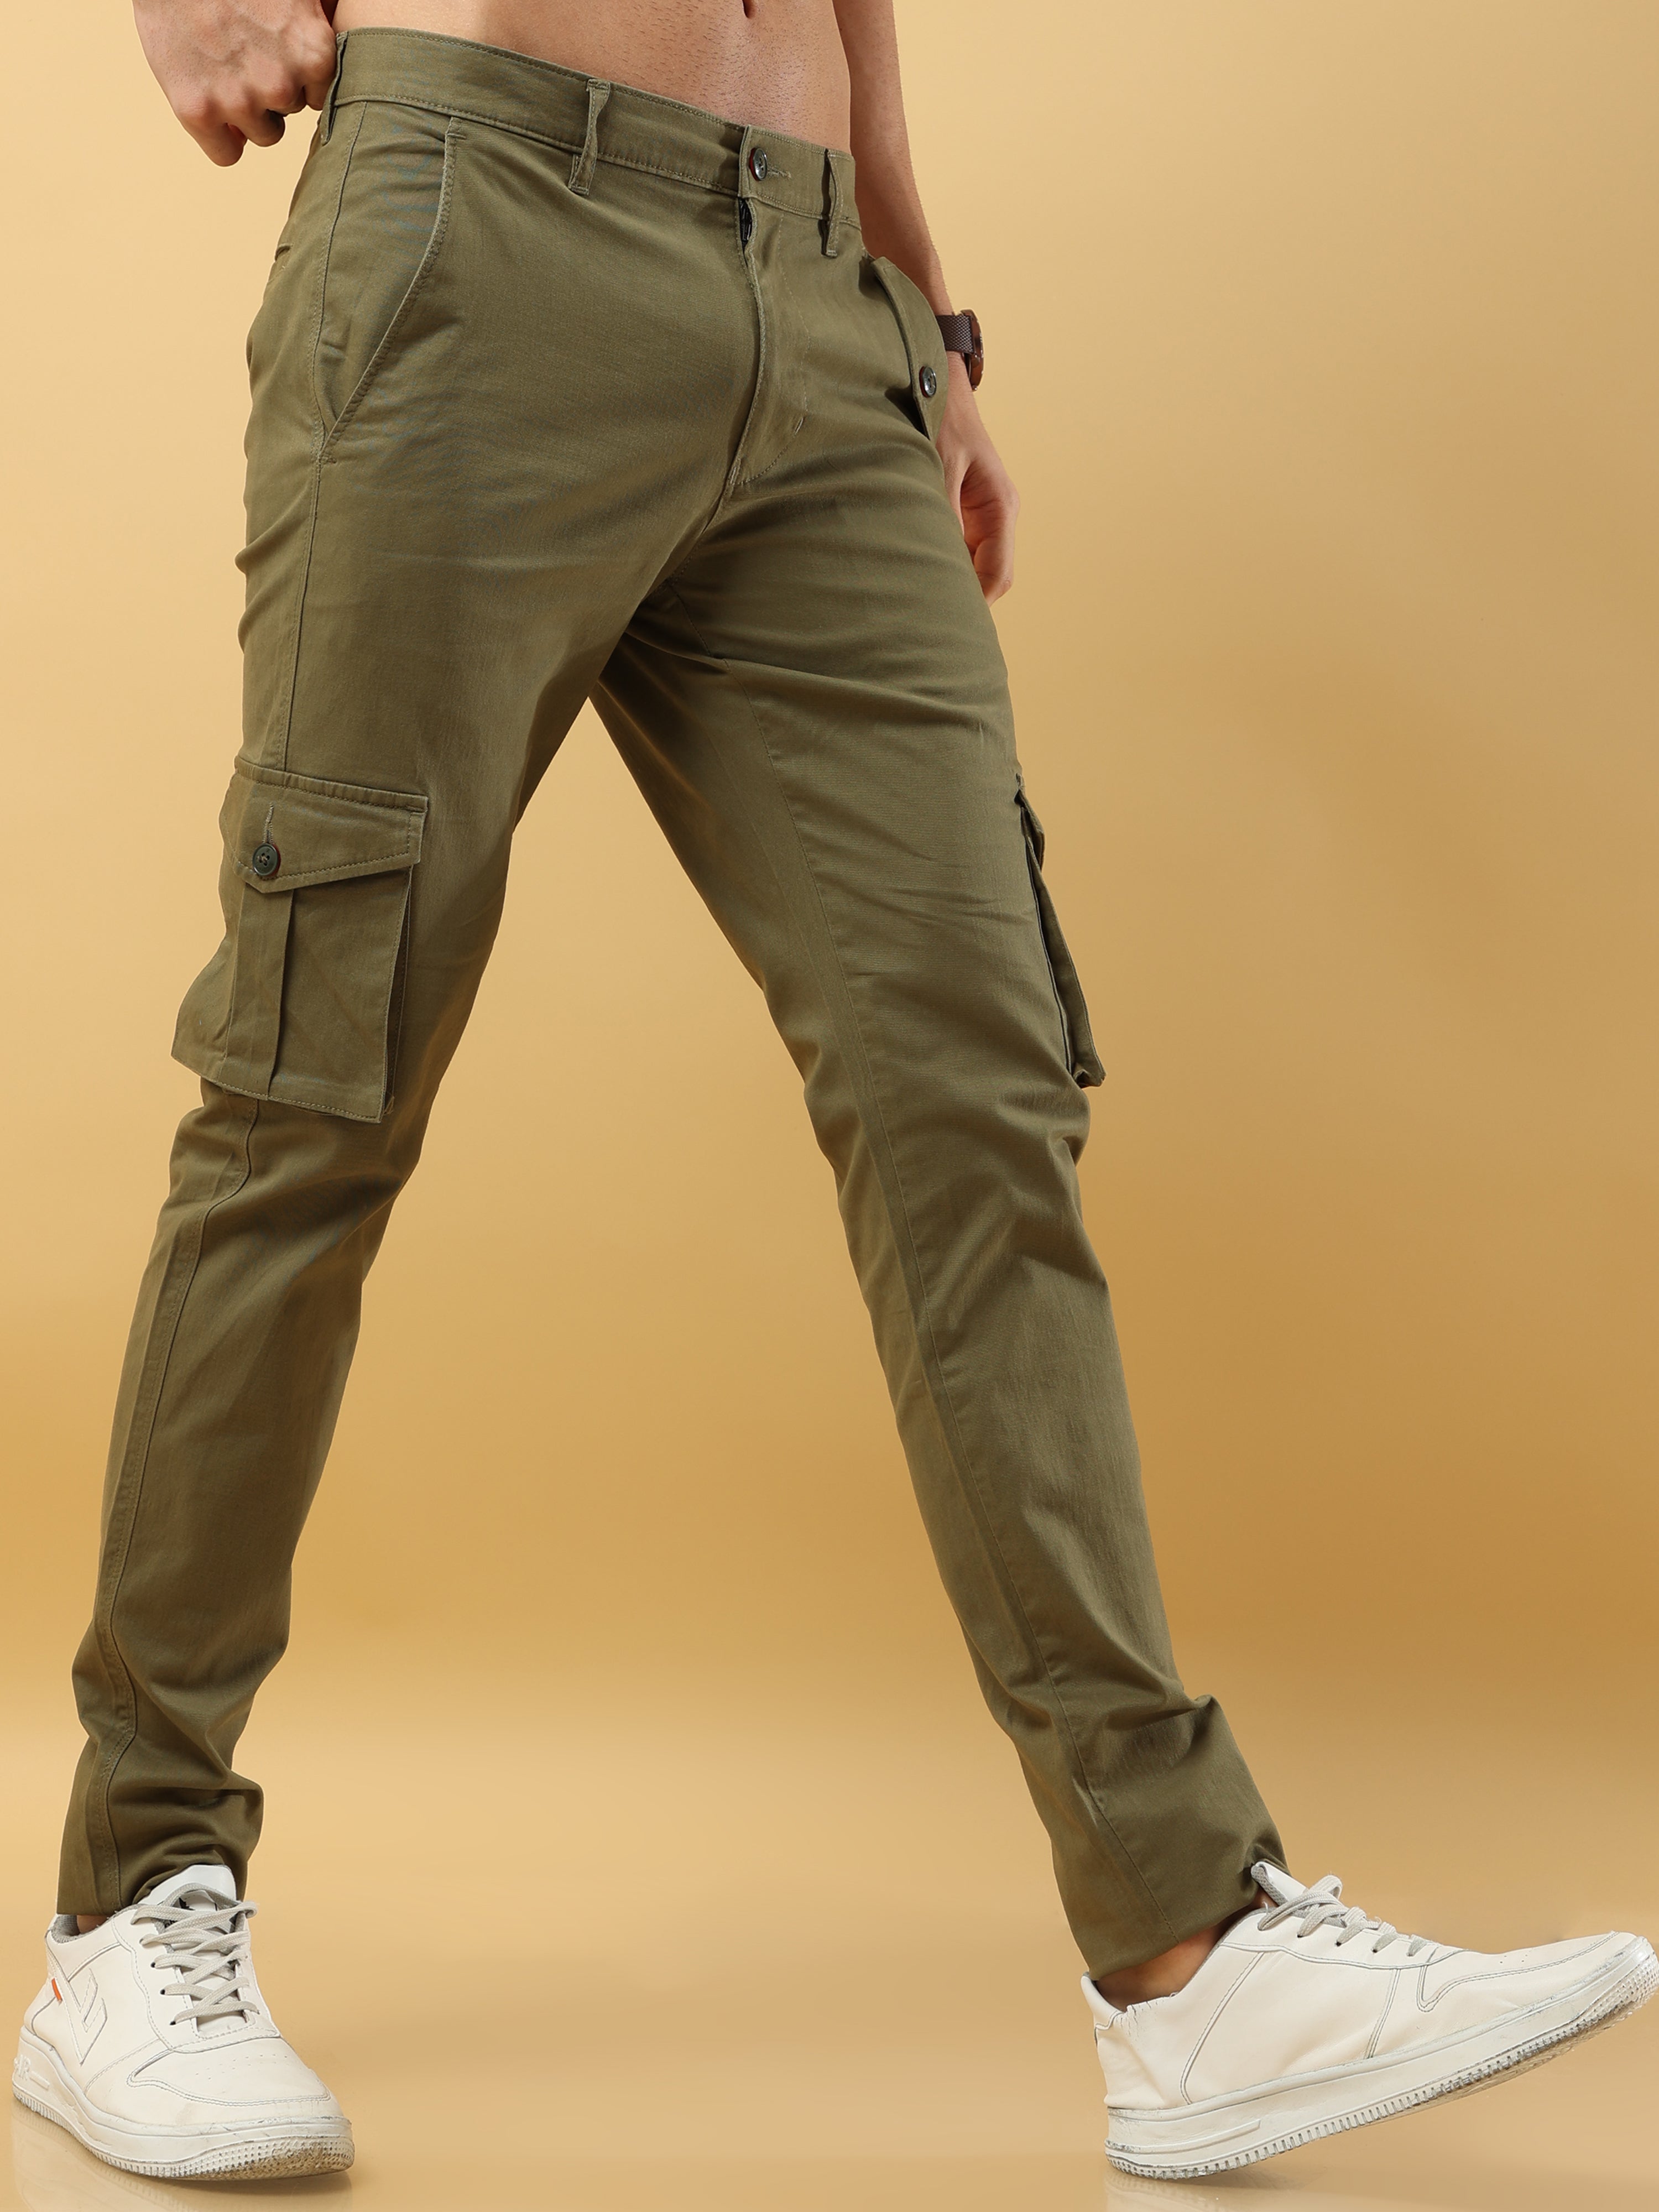 J Brand Utility Cargo Trousers Khaki Green NEW size W 24 | eBay